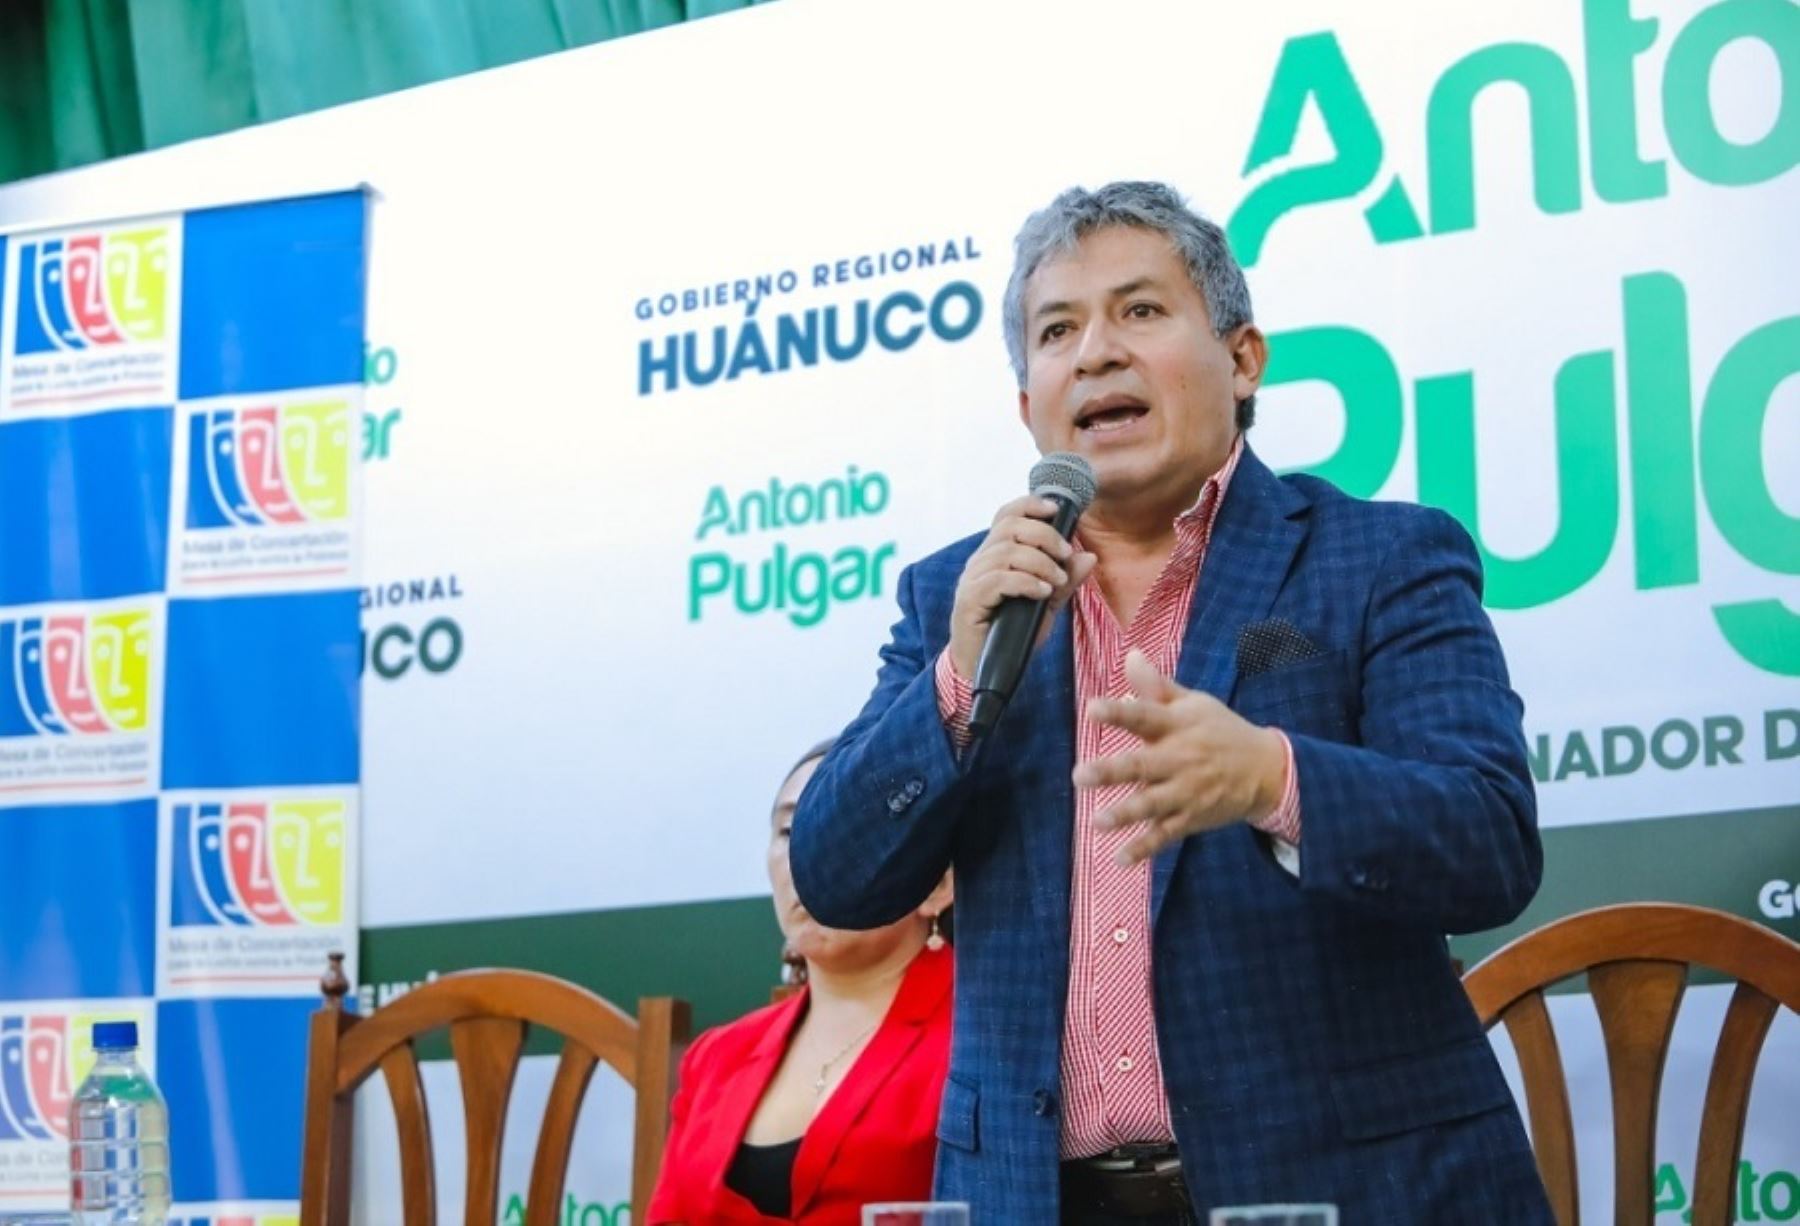 El presidente de la Mancomunidad Regional Amazónica y gobernador regional Huánuco, Antonio Pulgar Lucas, condenó el ataque a la vivienda del gobernador regional de Madre de Dios, Luis Otsuka Salazar, por un grupo de personas.